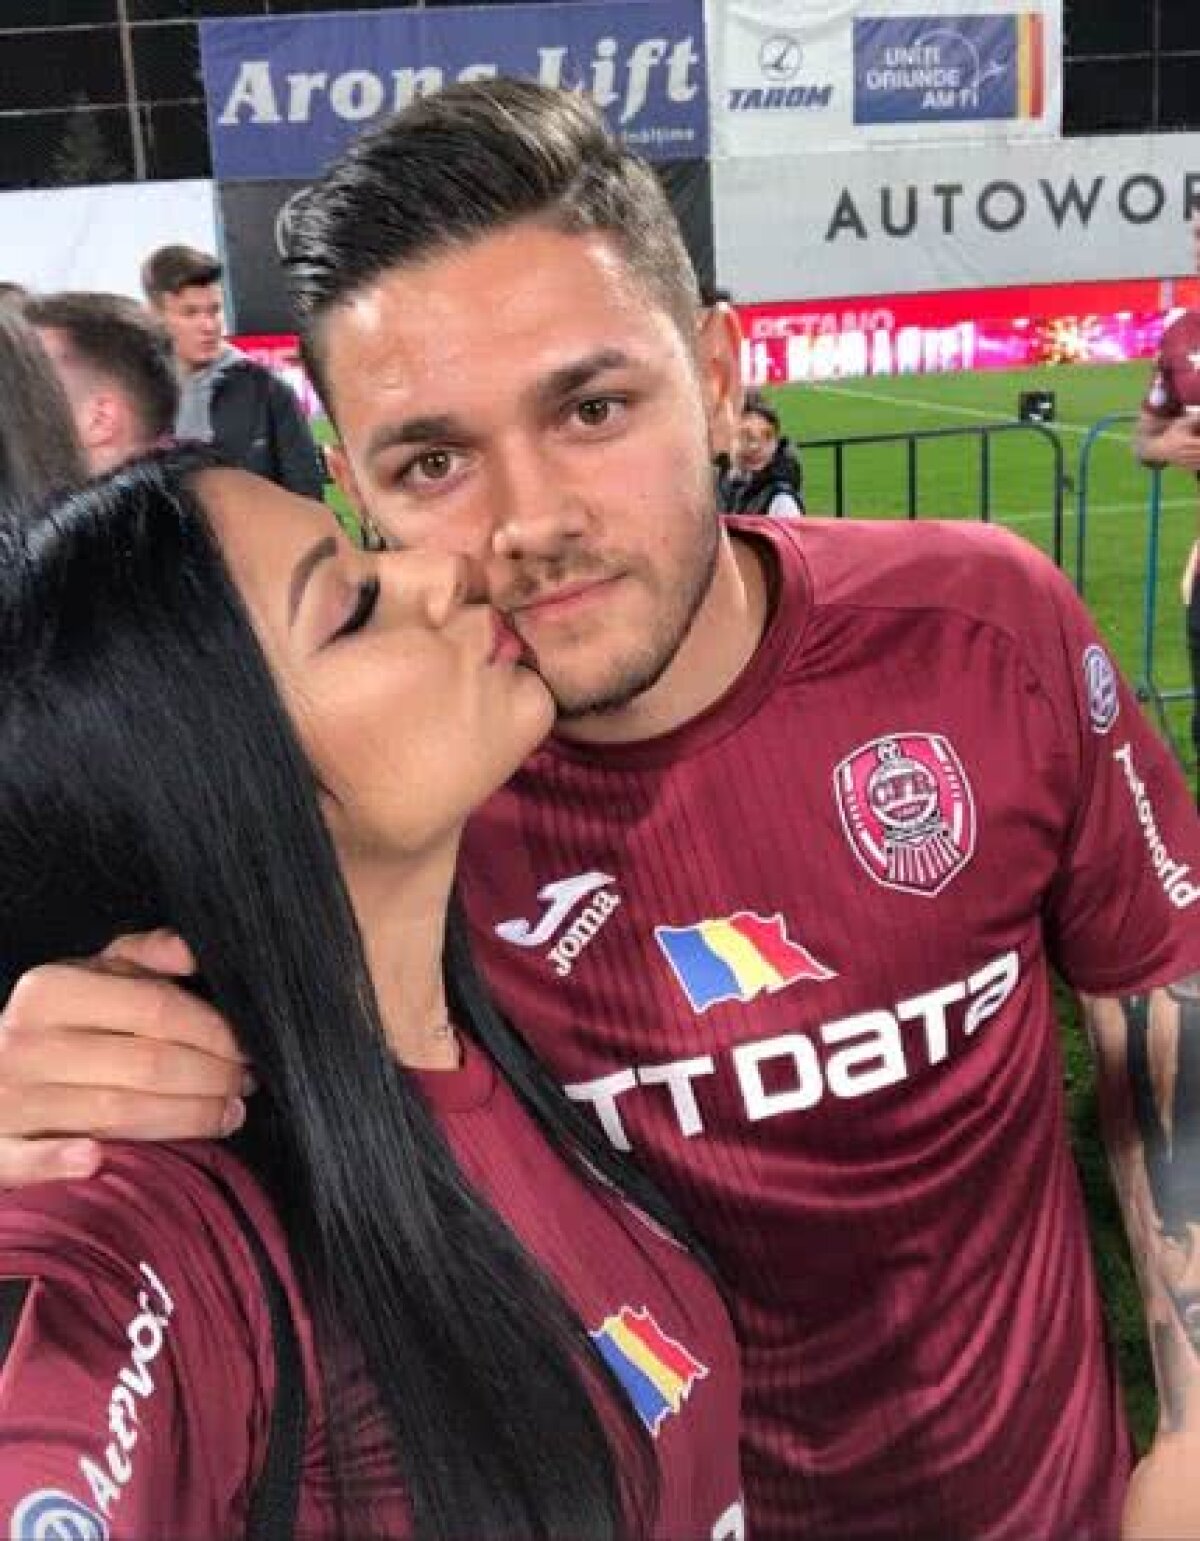 FOTO Alex Ioniță a punctat decisiv în plan personal: a cerut-o pe Adriana de soție după 8 luni de relație